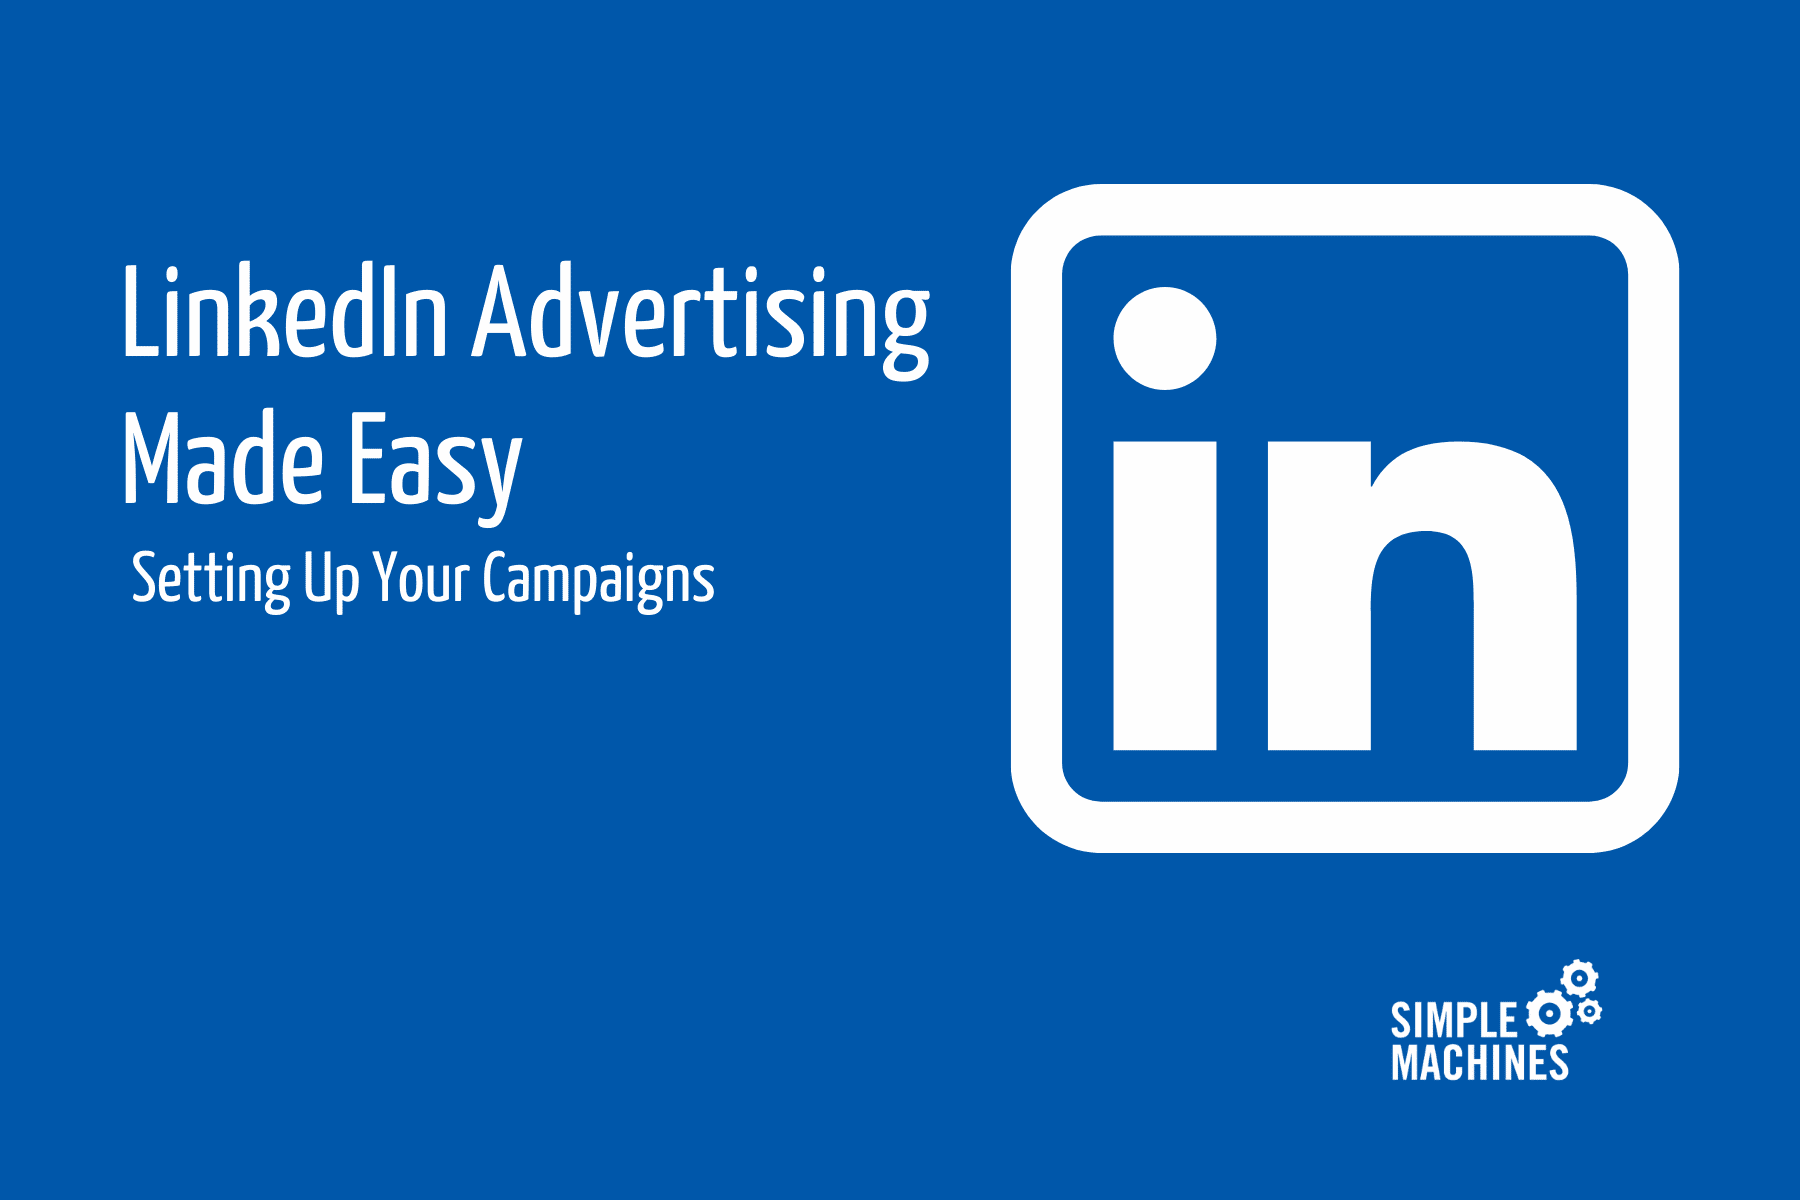 LinkedIn Advertising Made Easy